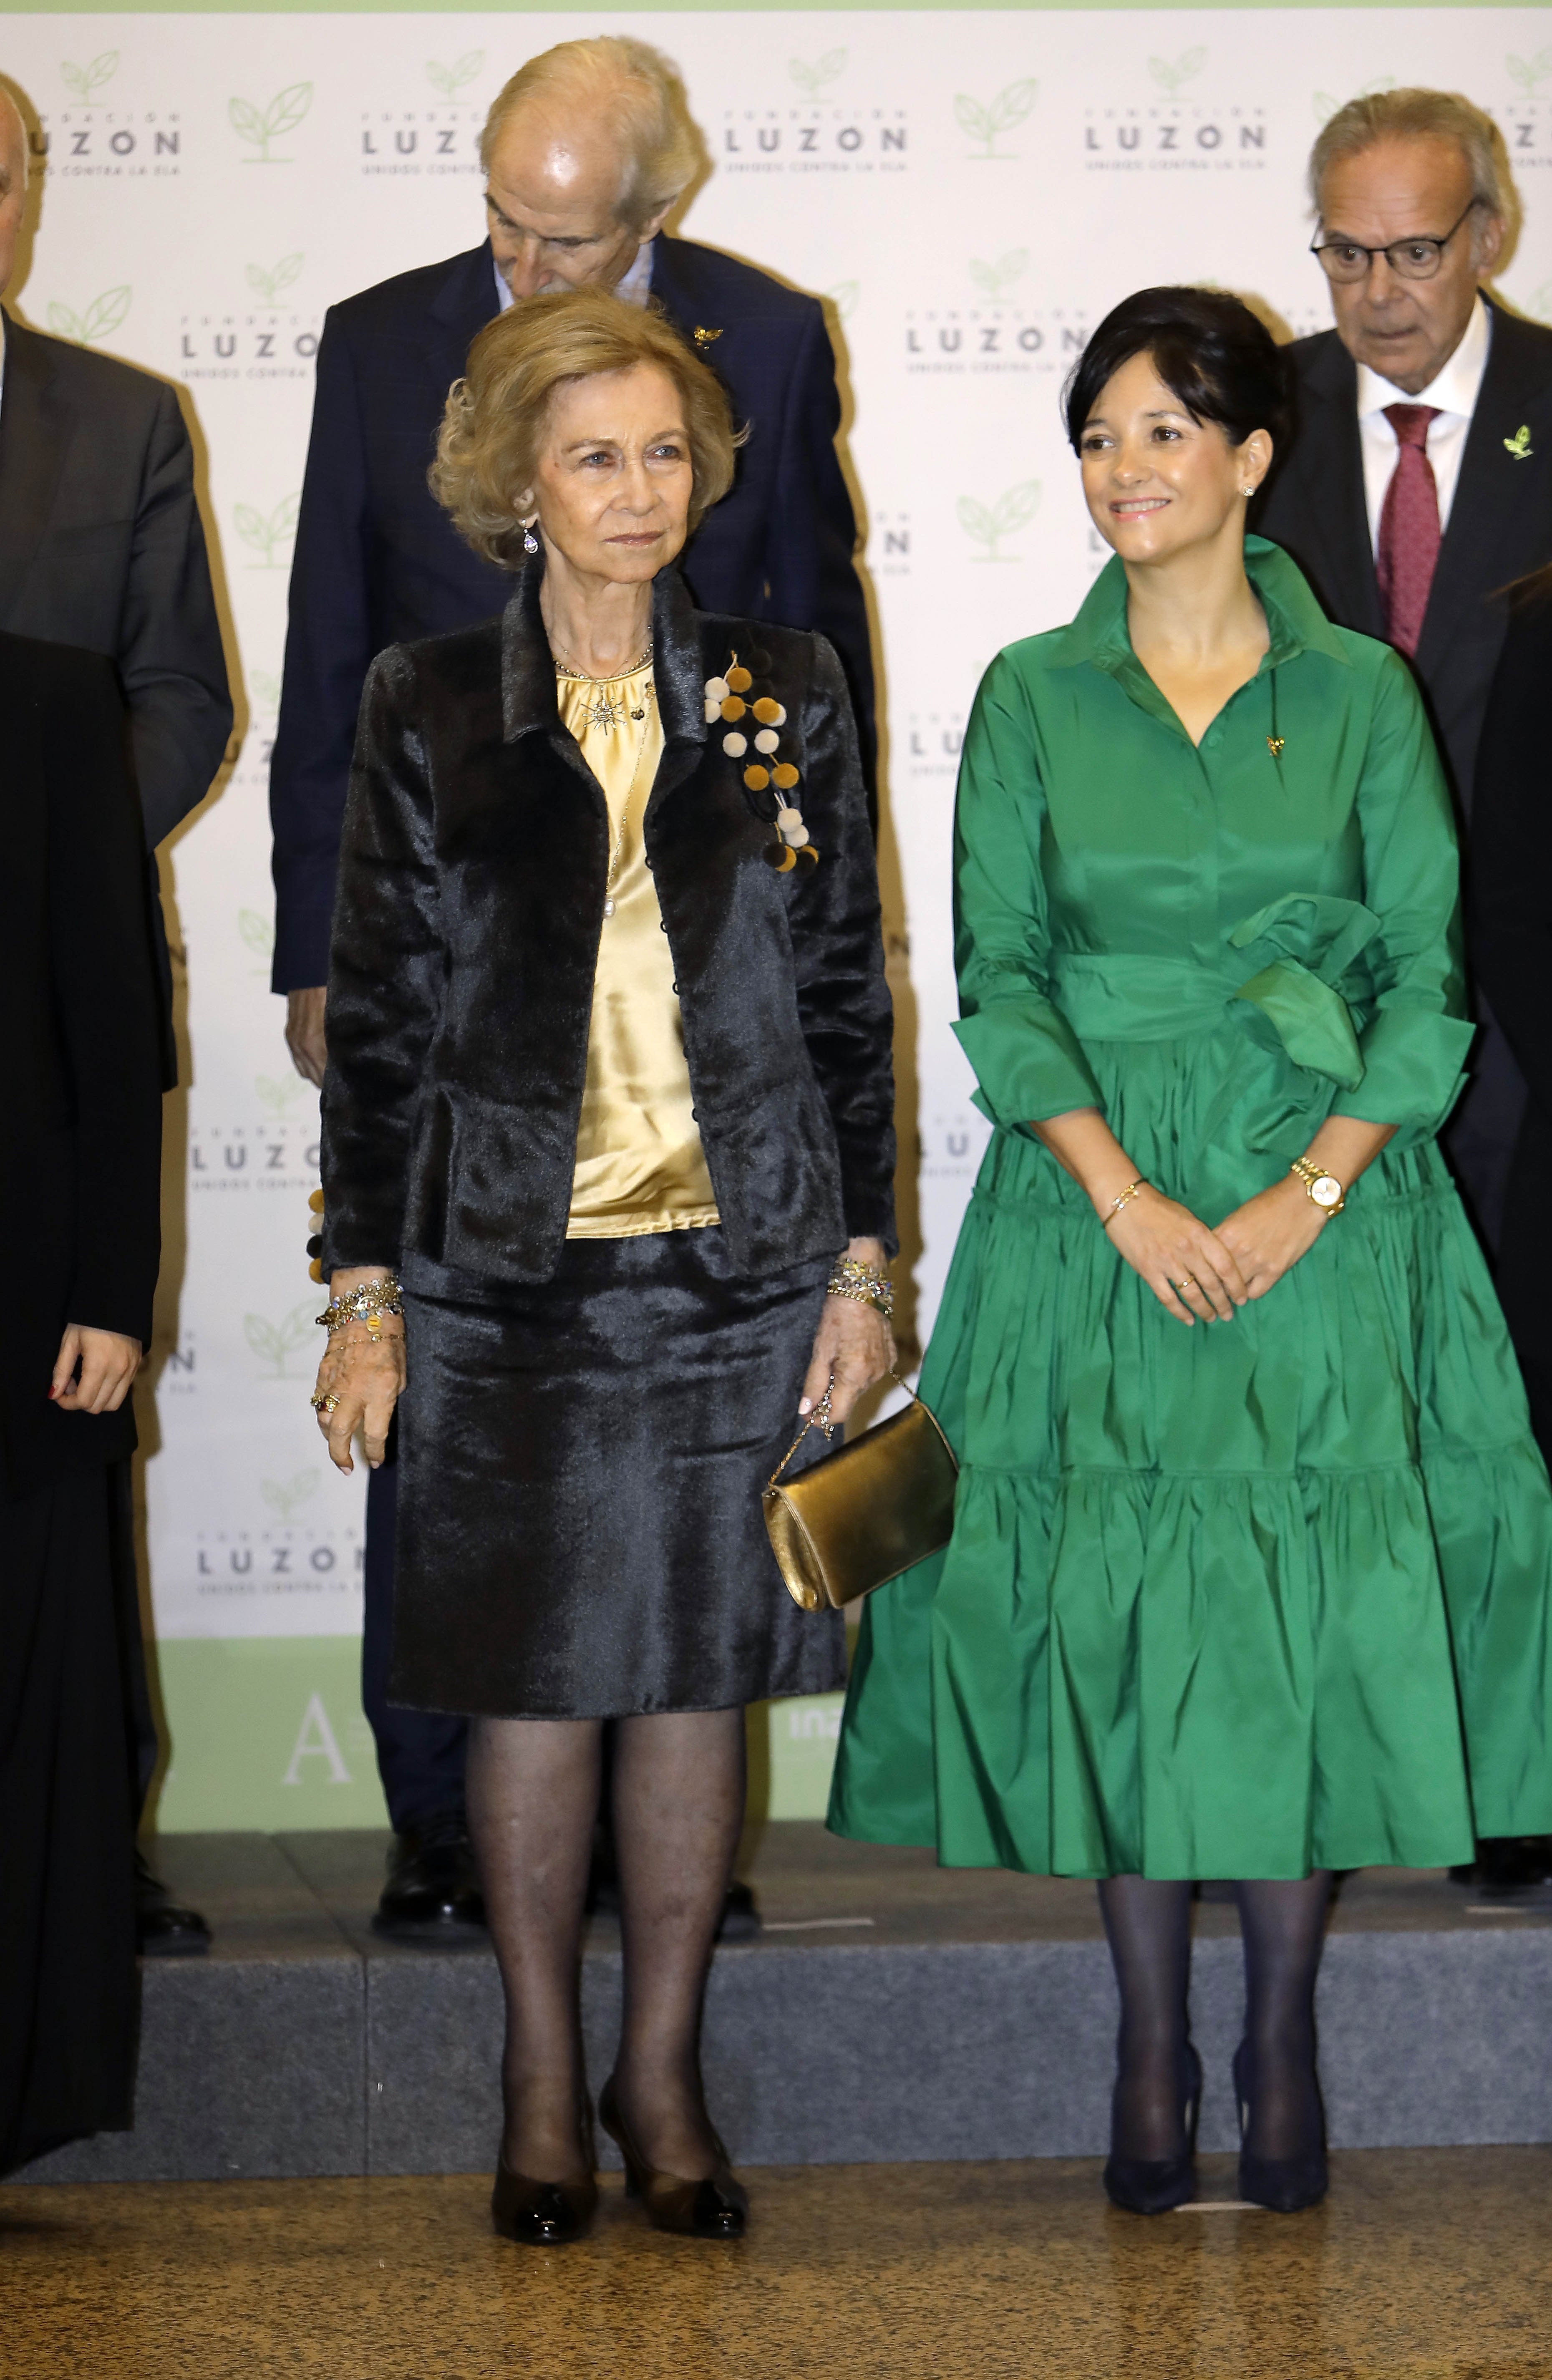 Reina Sofía de España y María José Arregui en concierto de la Fundación Francisco Luzón en Madrid en febrero de 2020. | Foto: Getty Images